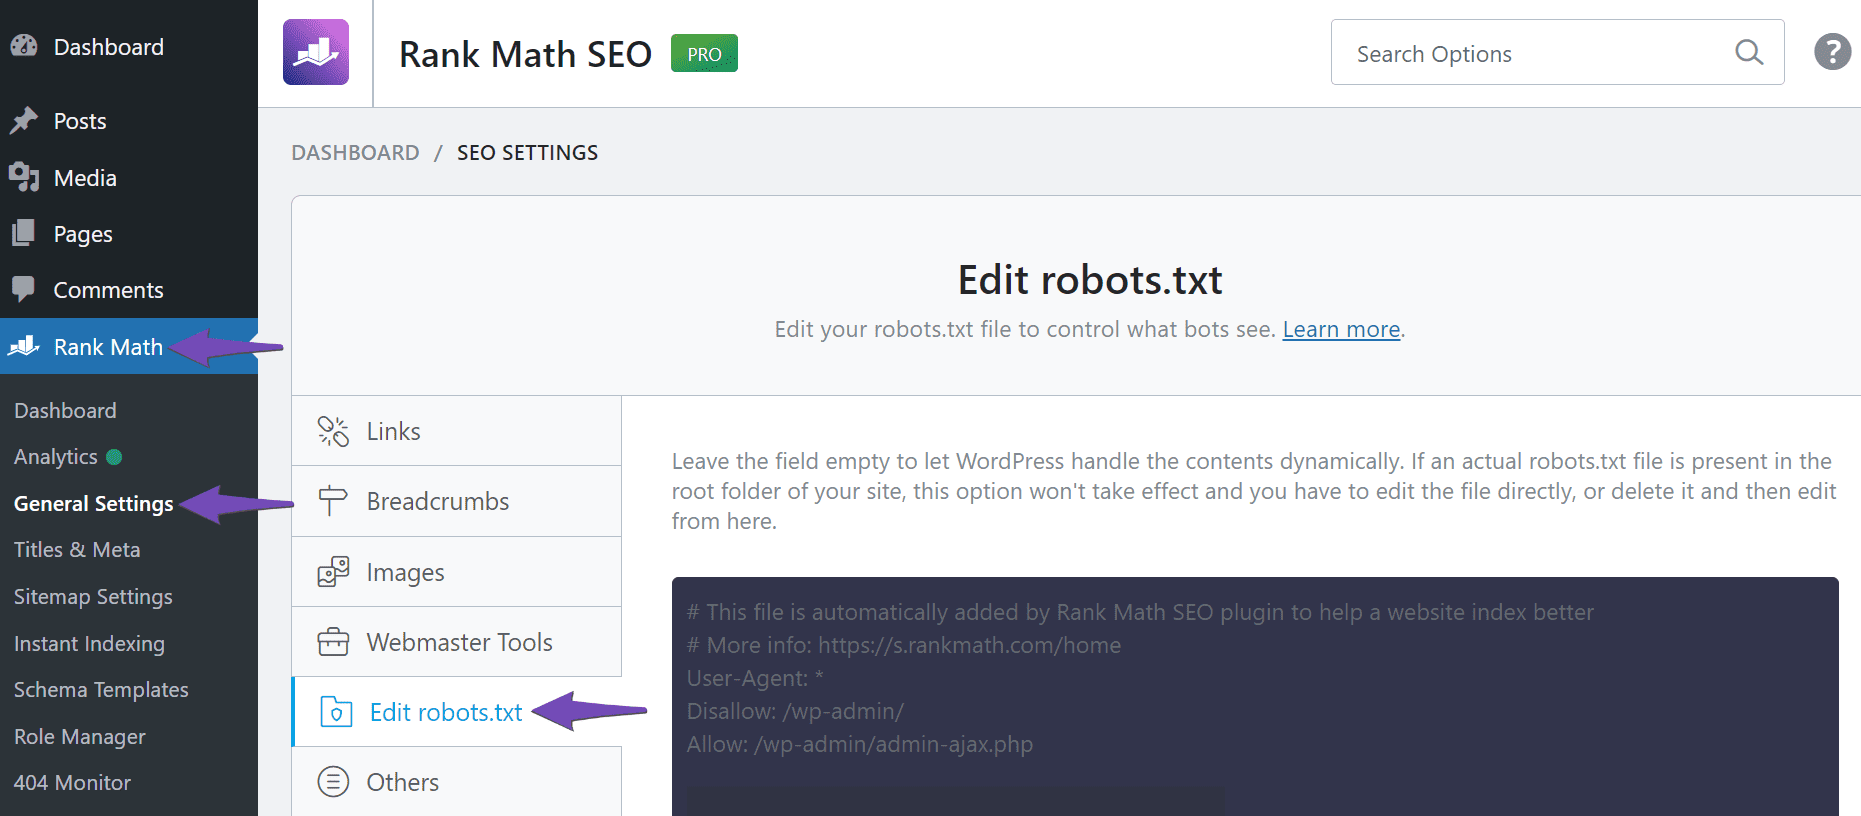 Navigate to Edit robots.txt to edit your robots.txt file